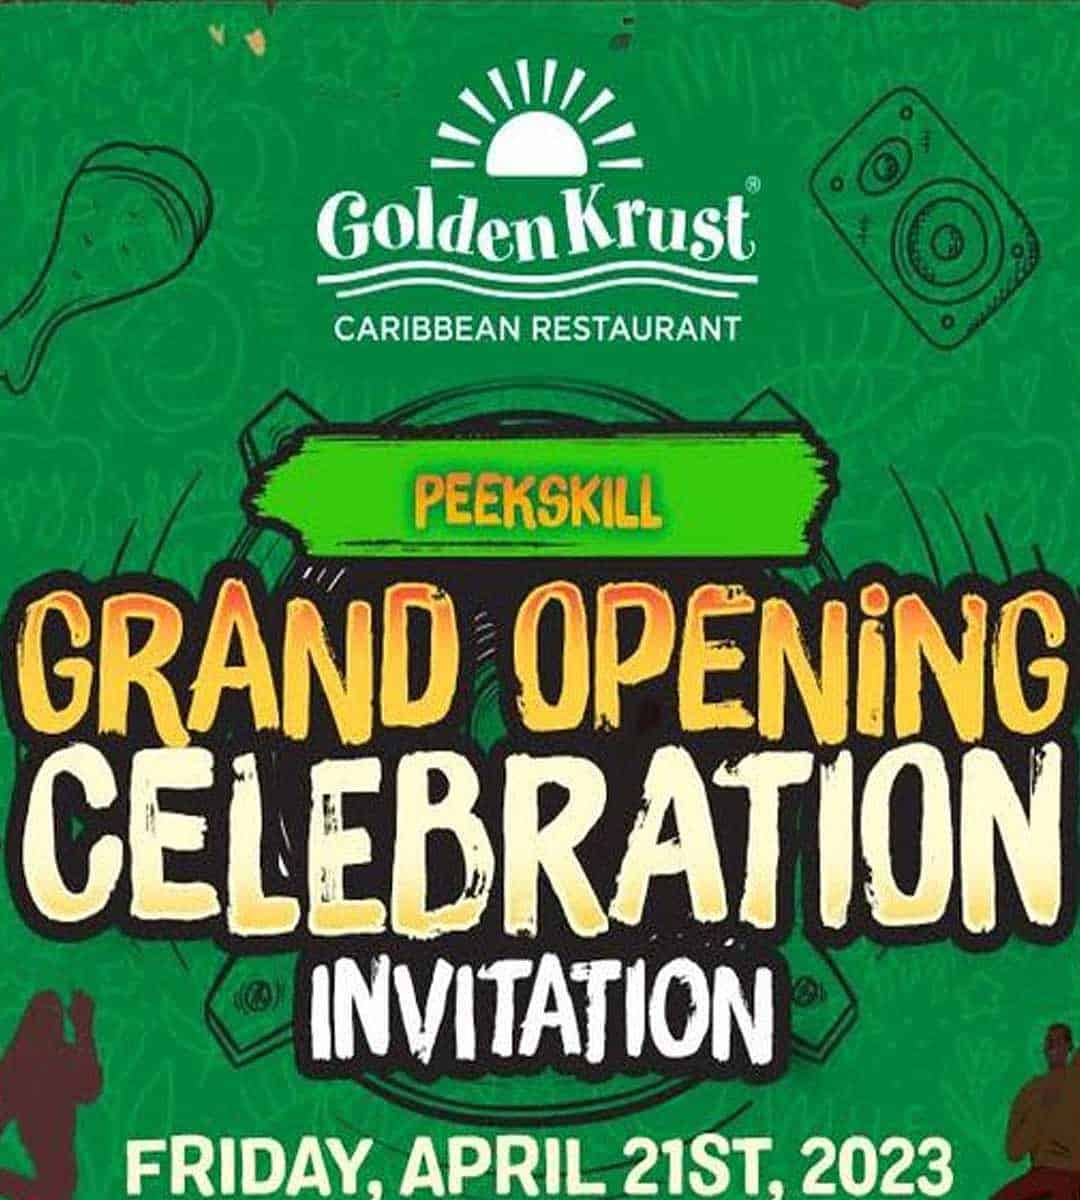 Peekskill Welcomes New Golden Krust Restaurant, Golden Krust